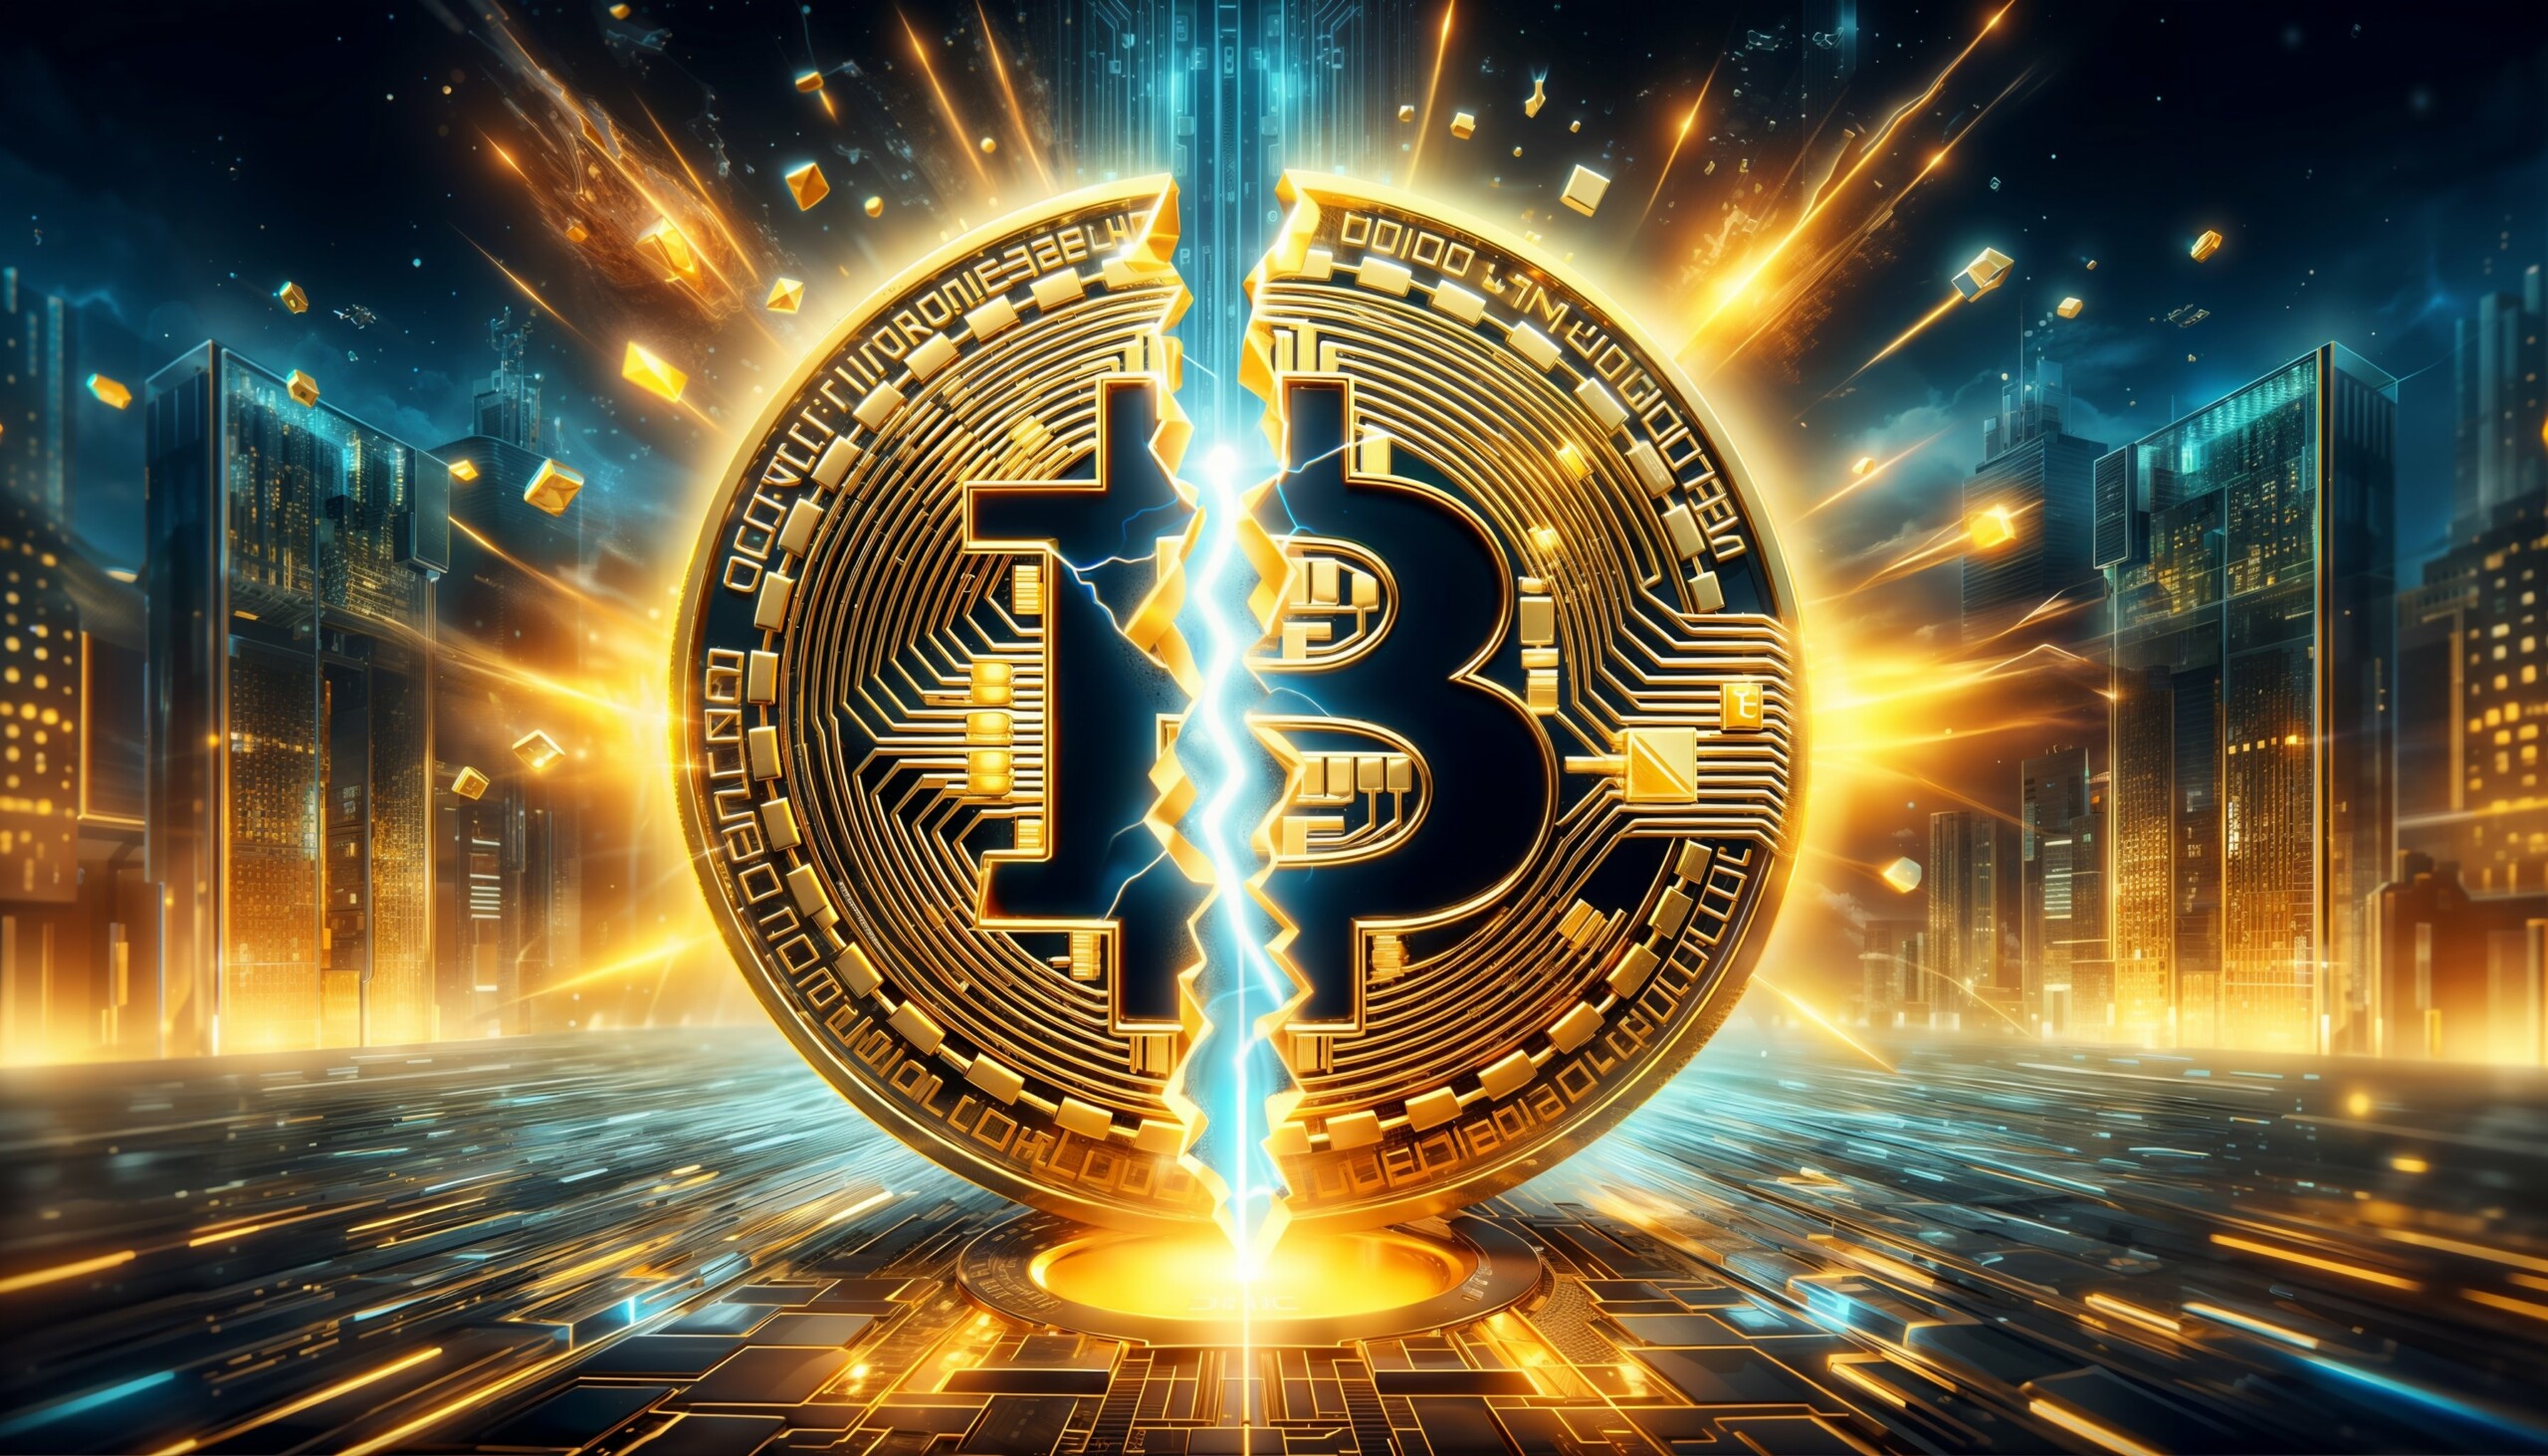 Bitcoin mit herben Verlusten – Kurs rutscht unter 200-Tagelinie